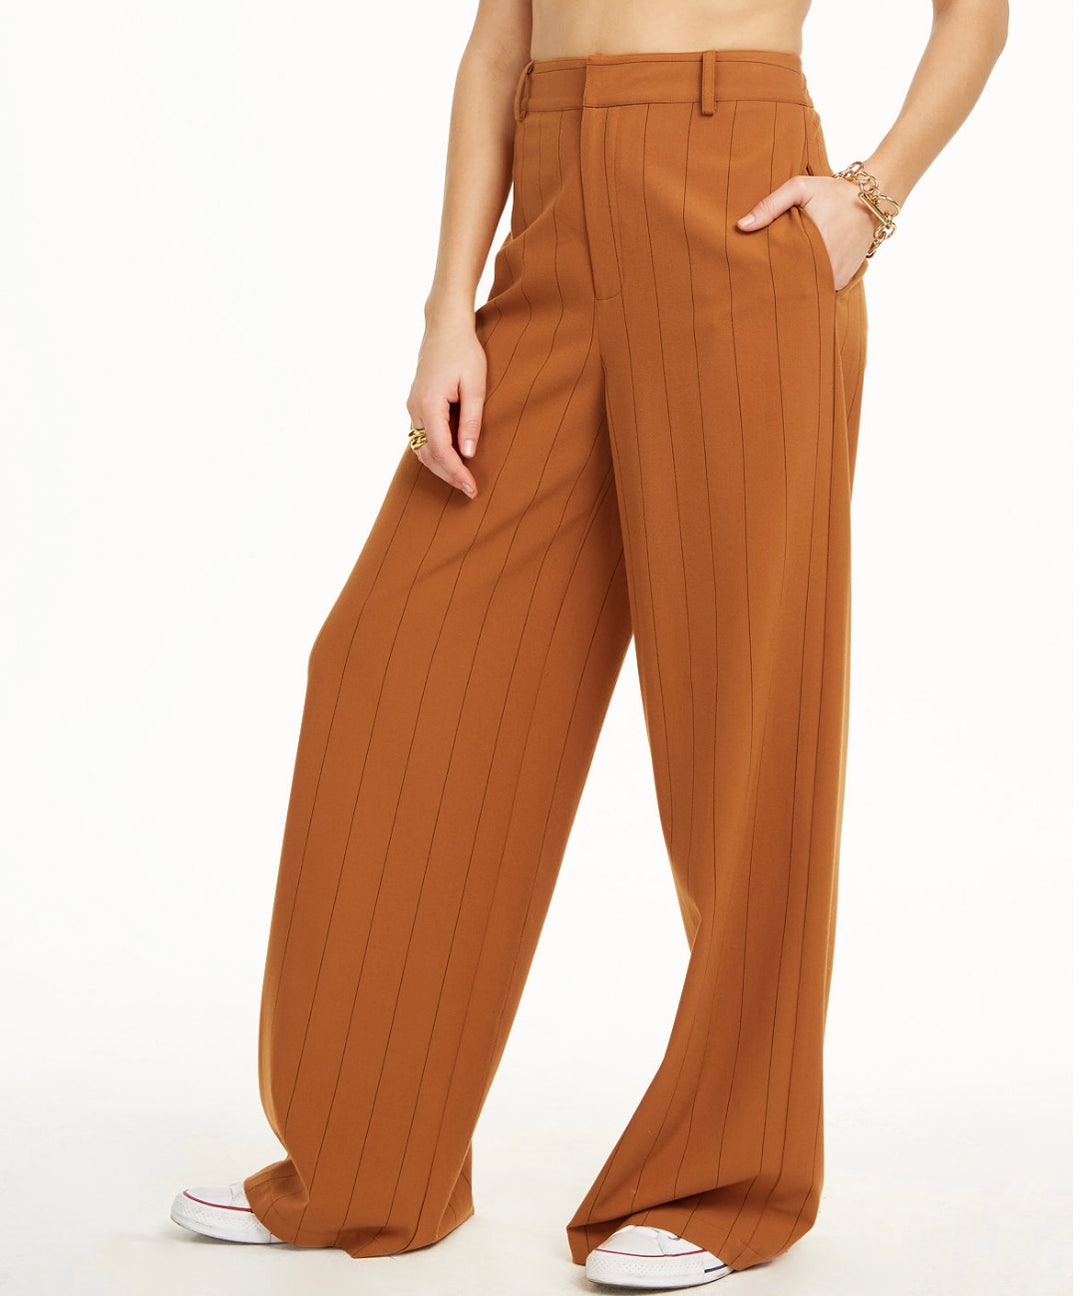 Danielle Bernstein Women's Pinstripe Trouser Pants HG Pinstrp